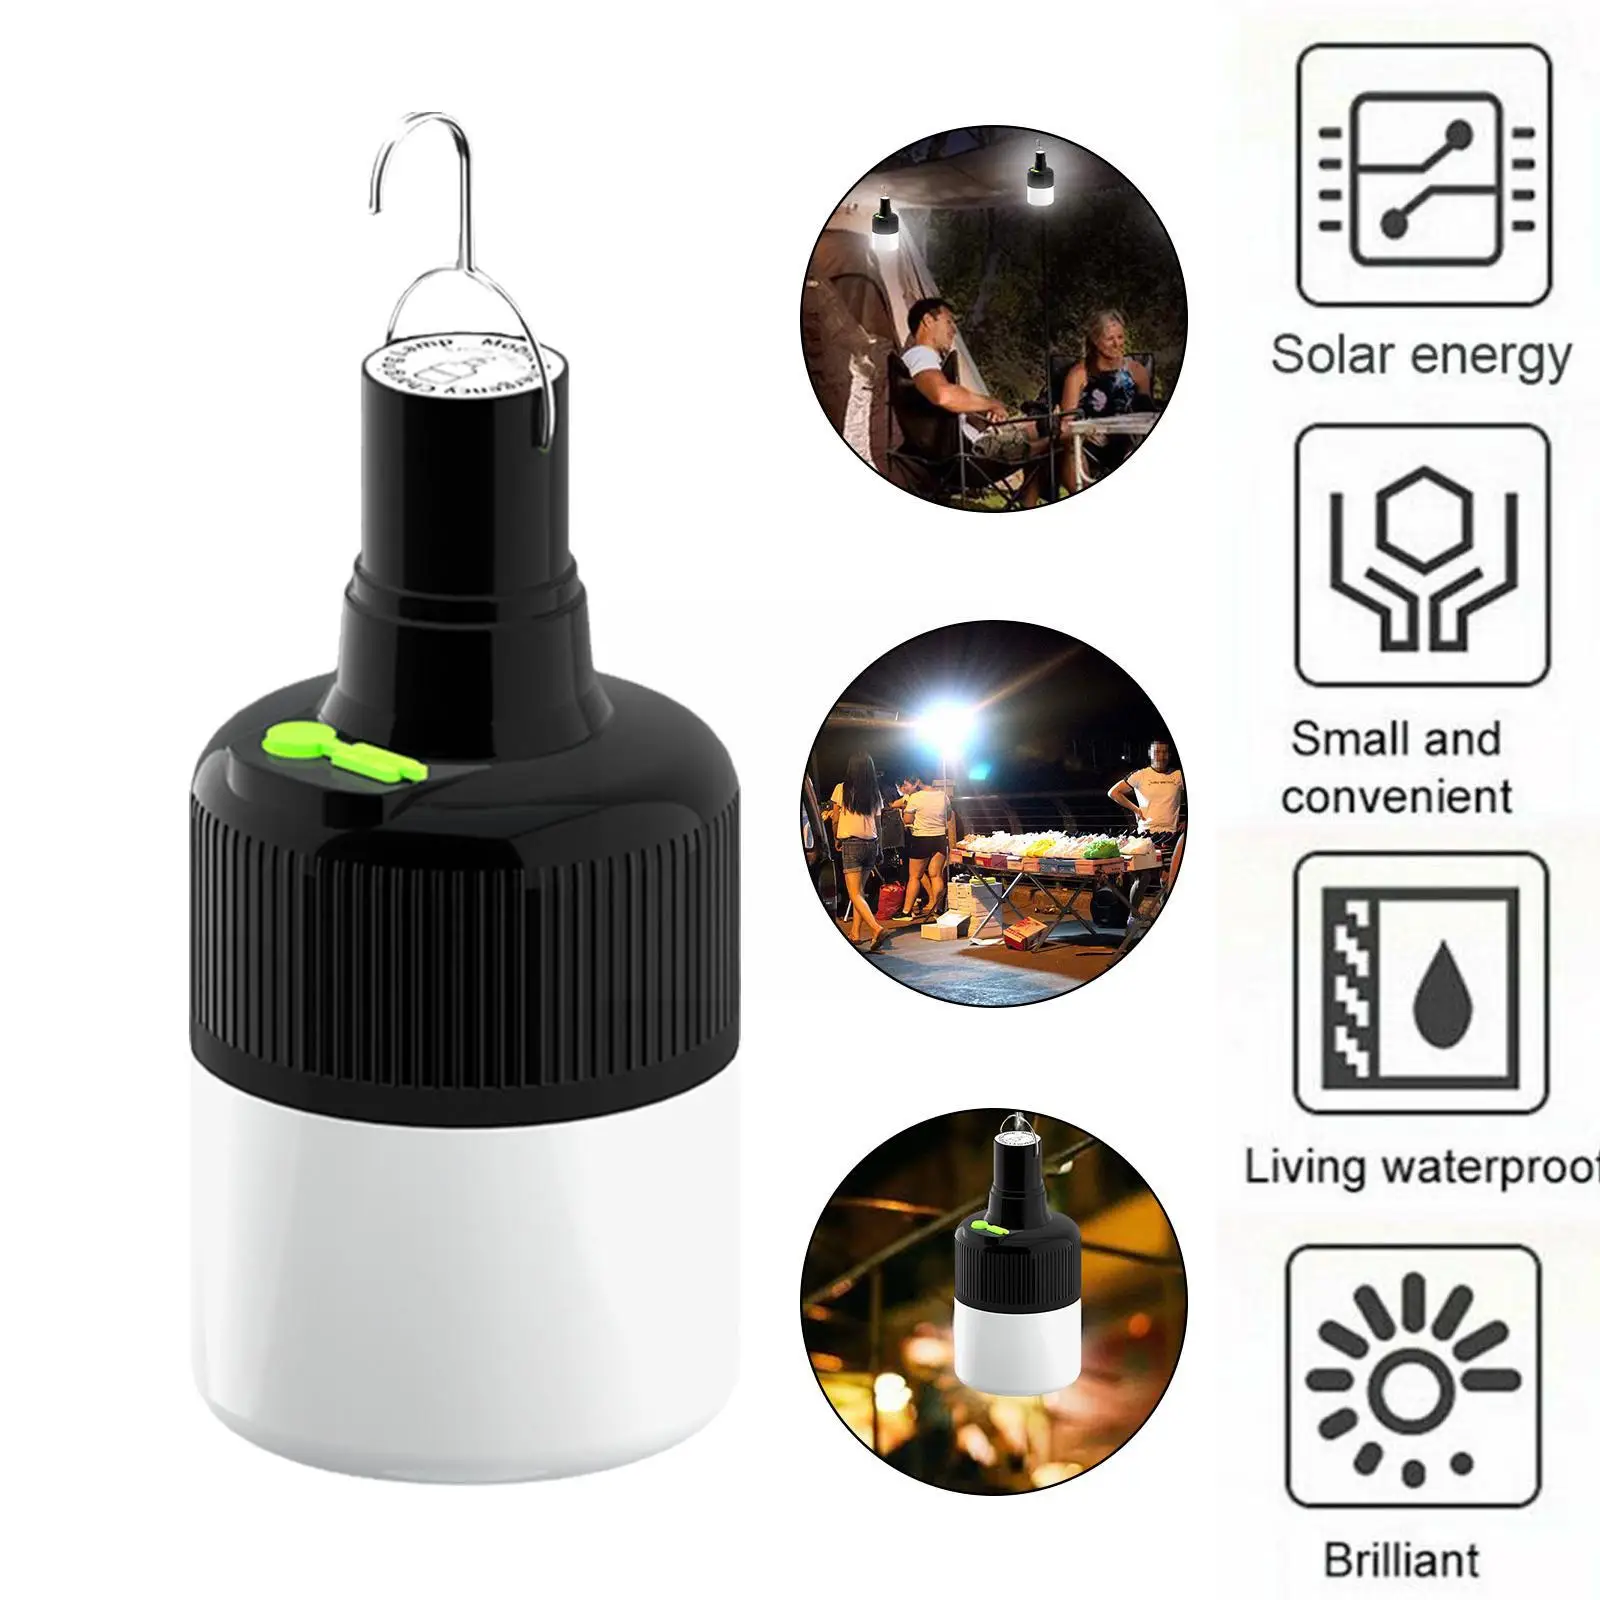 

Аварийный светодиодный светильник с USB-зарядкой, уличная лампа для кемпинга, переносной светильник для палатки с аккумулятором, фонарь для патио, крыльца, сада, барбекю